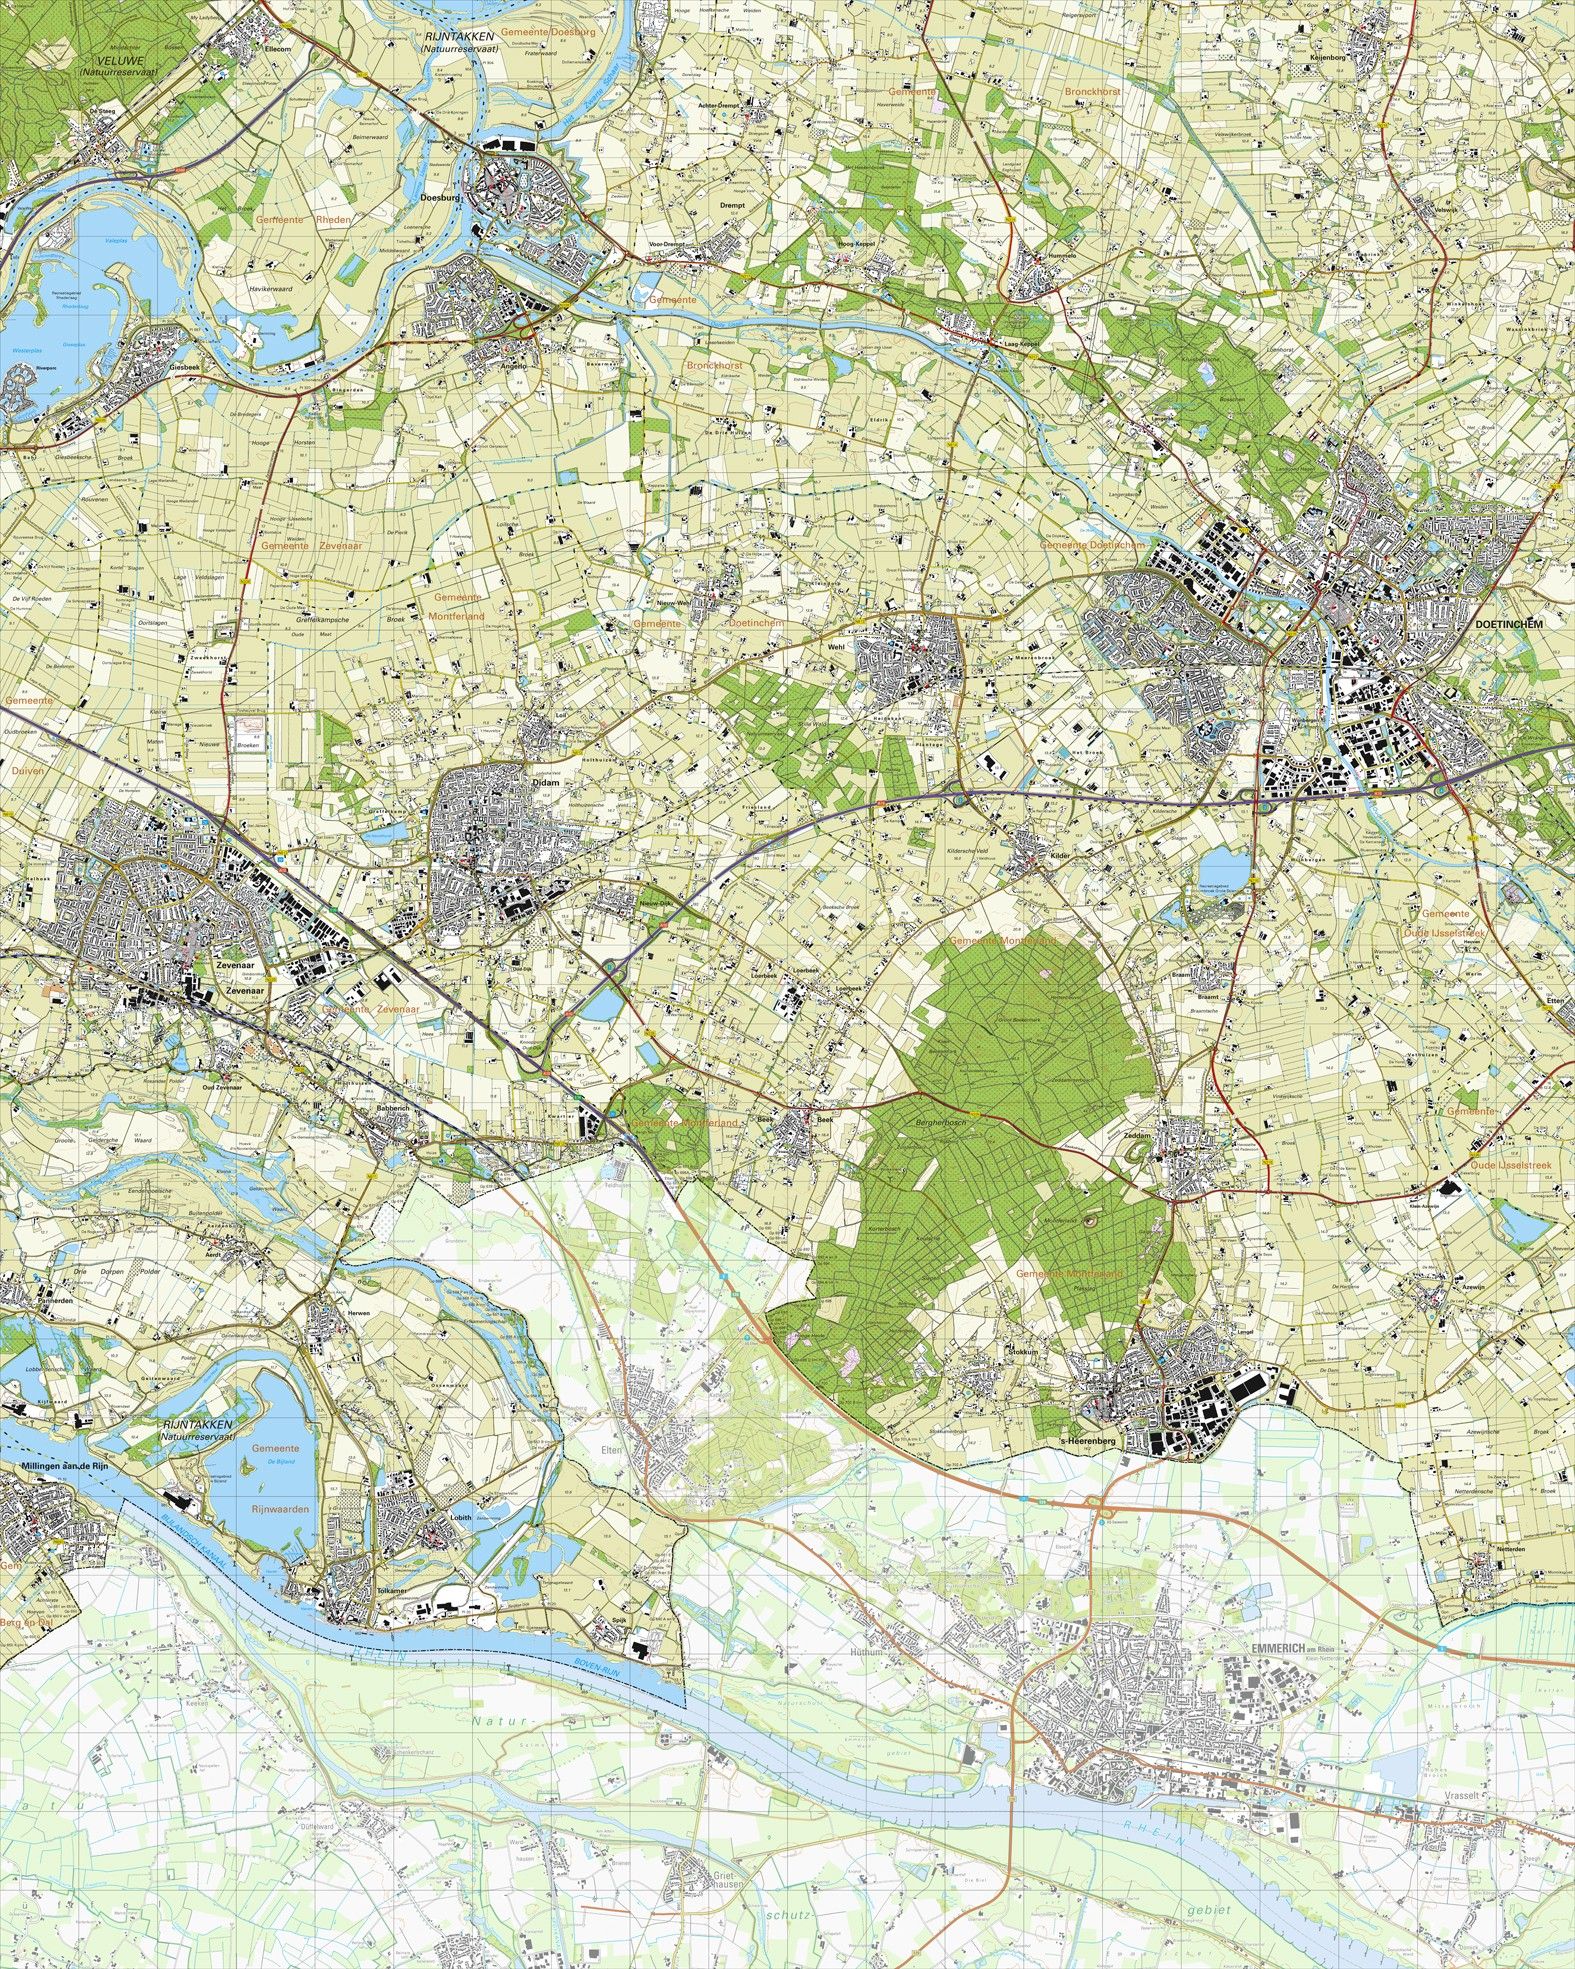 Krachtig Plakken Kilometers Koop Topografische kaart schaal 1:25.000 (Doetinchem, Zevenaar, Didam, 's-Heerenberg,  Zeddam) voordelig online bij COMMEE